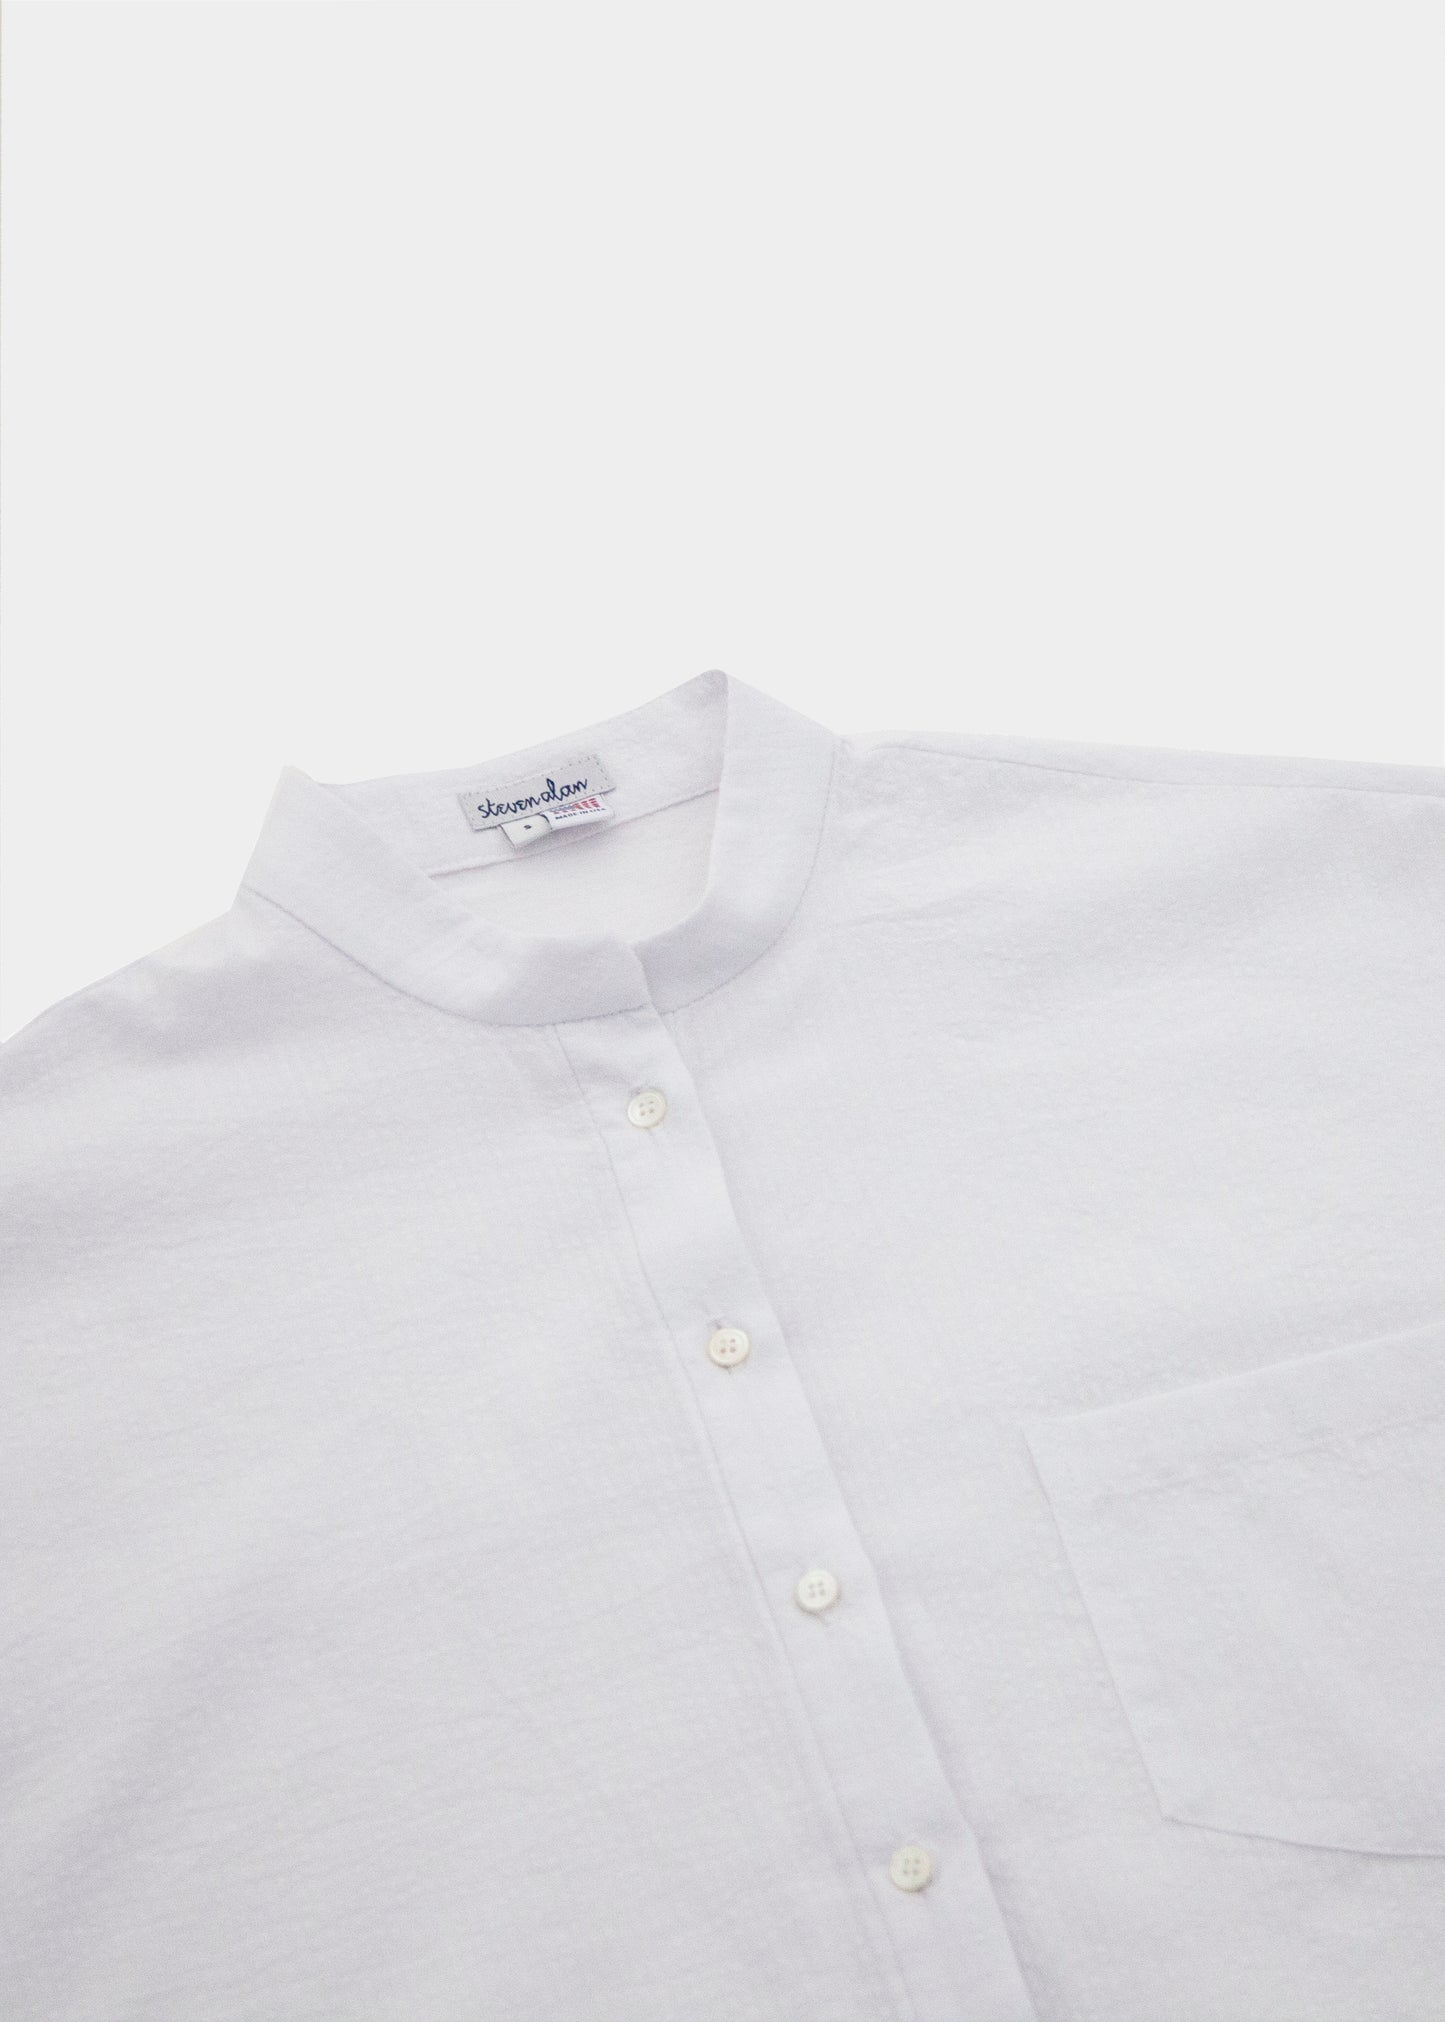 Steven Alan x Clare V Oversized Stand Collar Shirt, White Seersucker